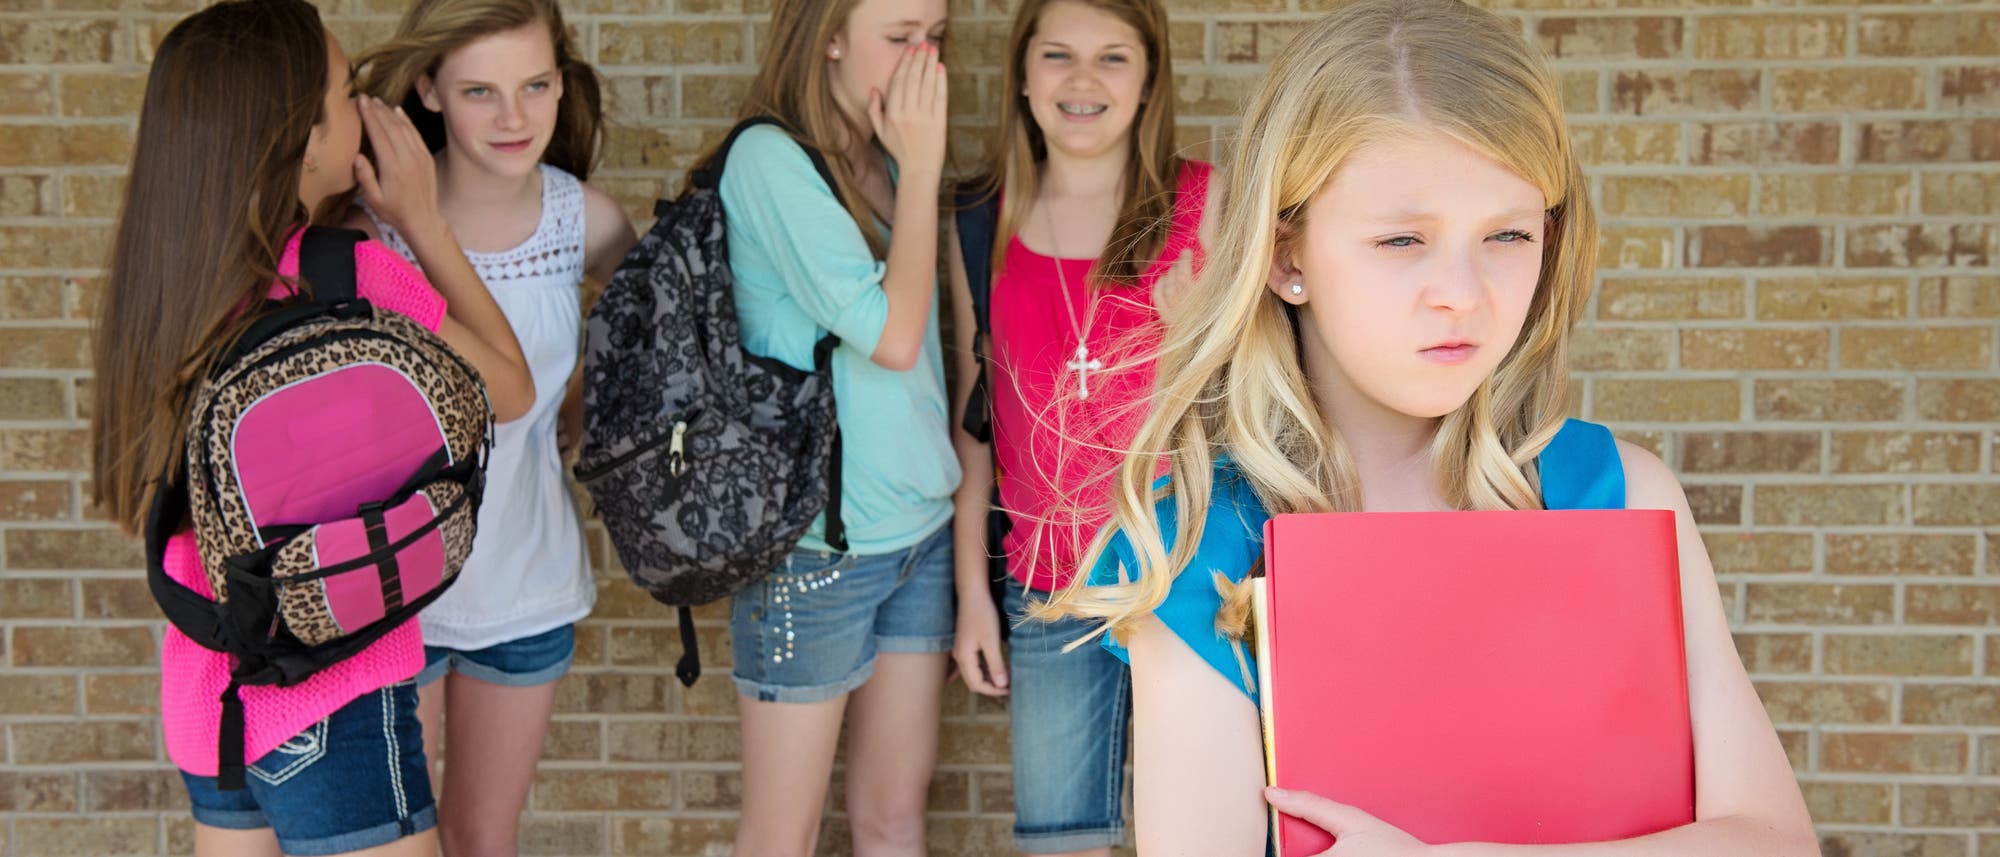 Mädchen tuscheln über Mitschülerin: Sexuelle Gewalt kann auch auf verbaler Ebene stattfinden